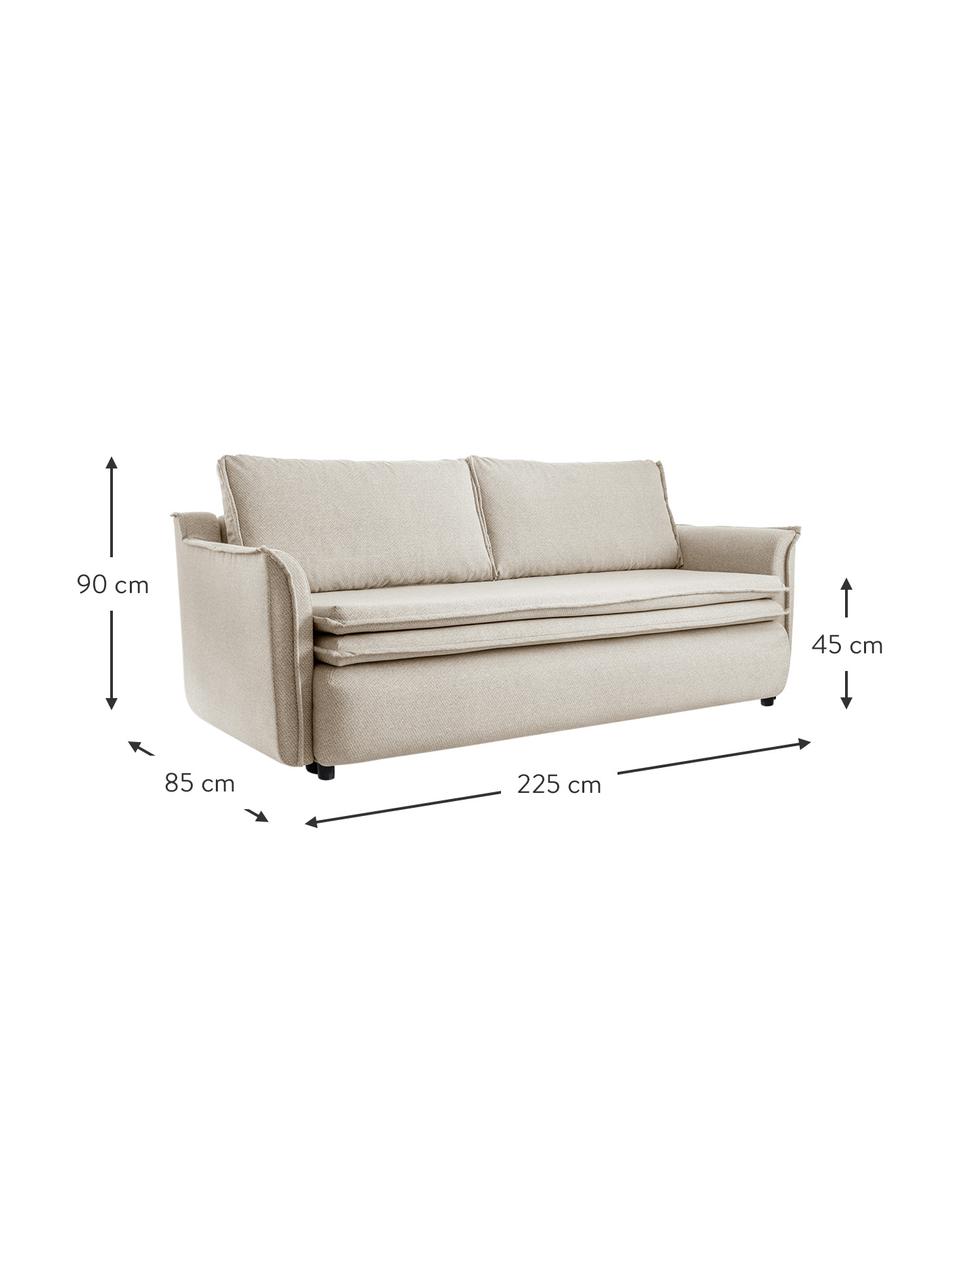 Sofa rozkładana z miejscem do przechowywania Charming Charlie, Beżowy, S 225 x G 85 cm